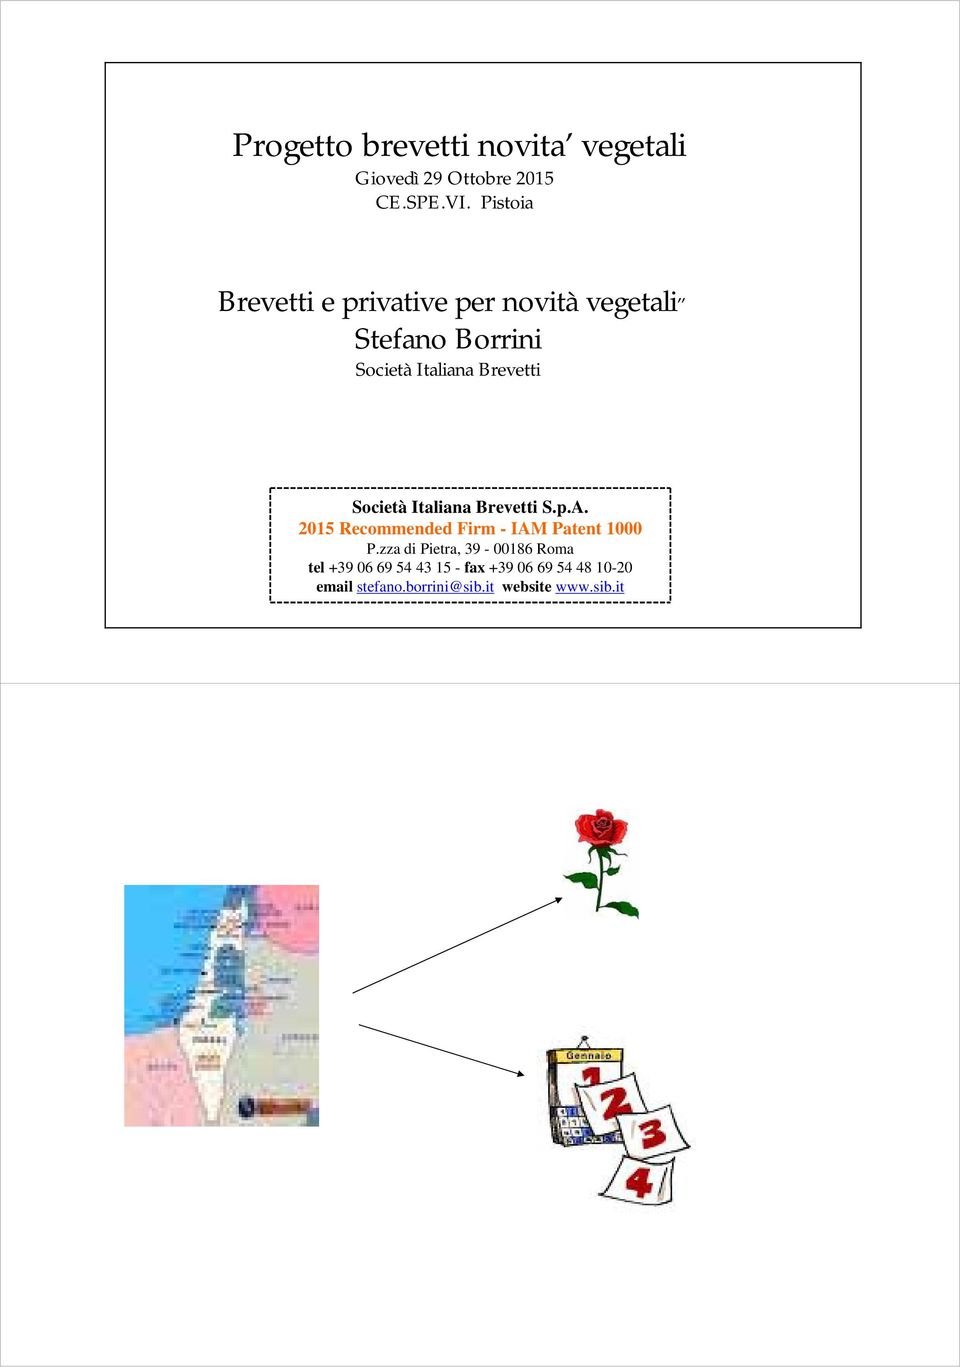 Società Italiana Brevetti S.p.A. 2015 Recommended Firm - IAM Patent 1000 P.